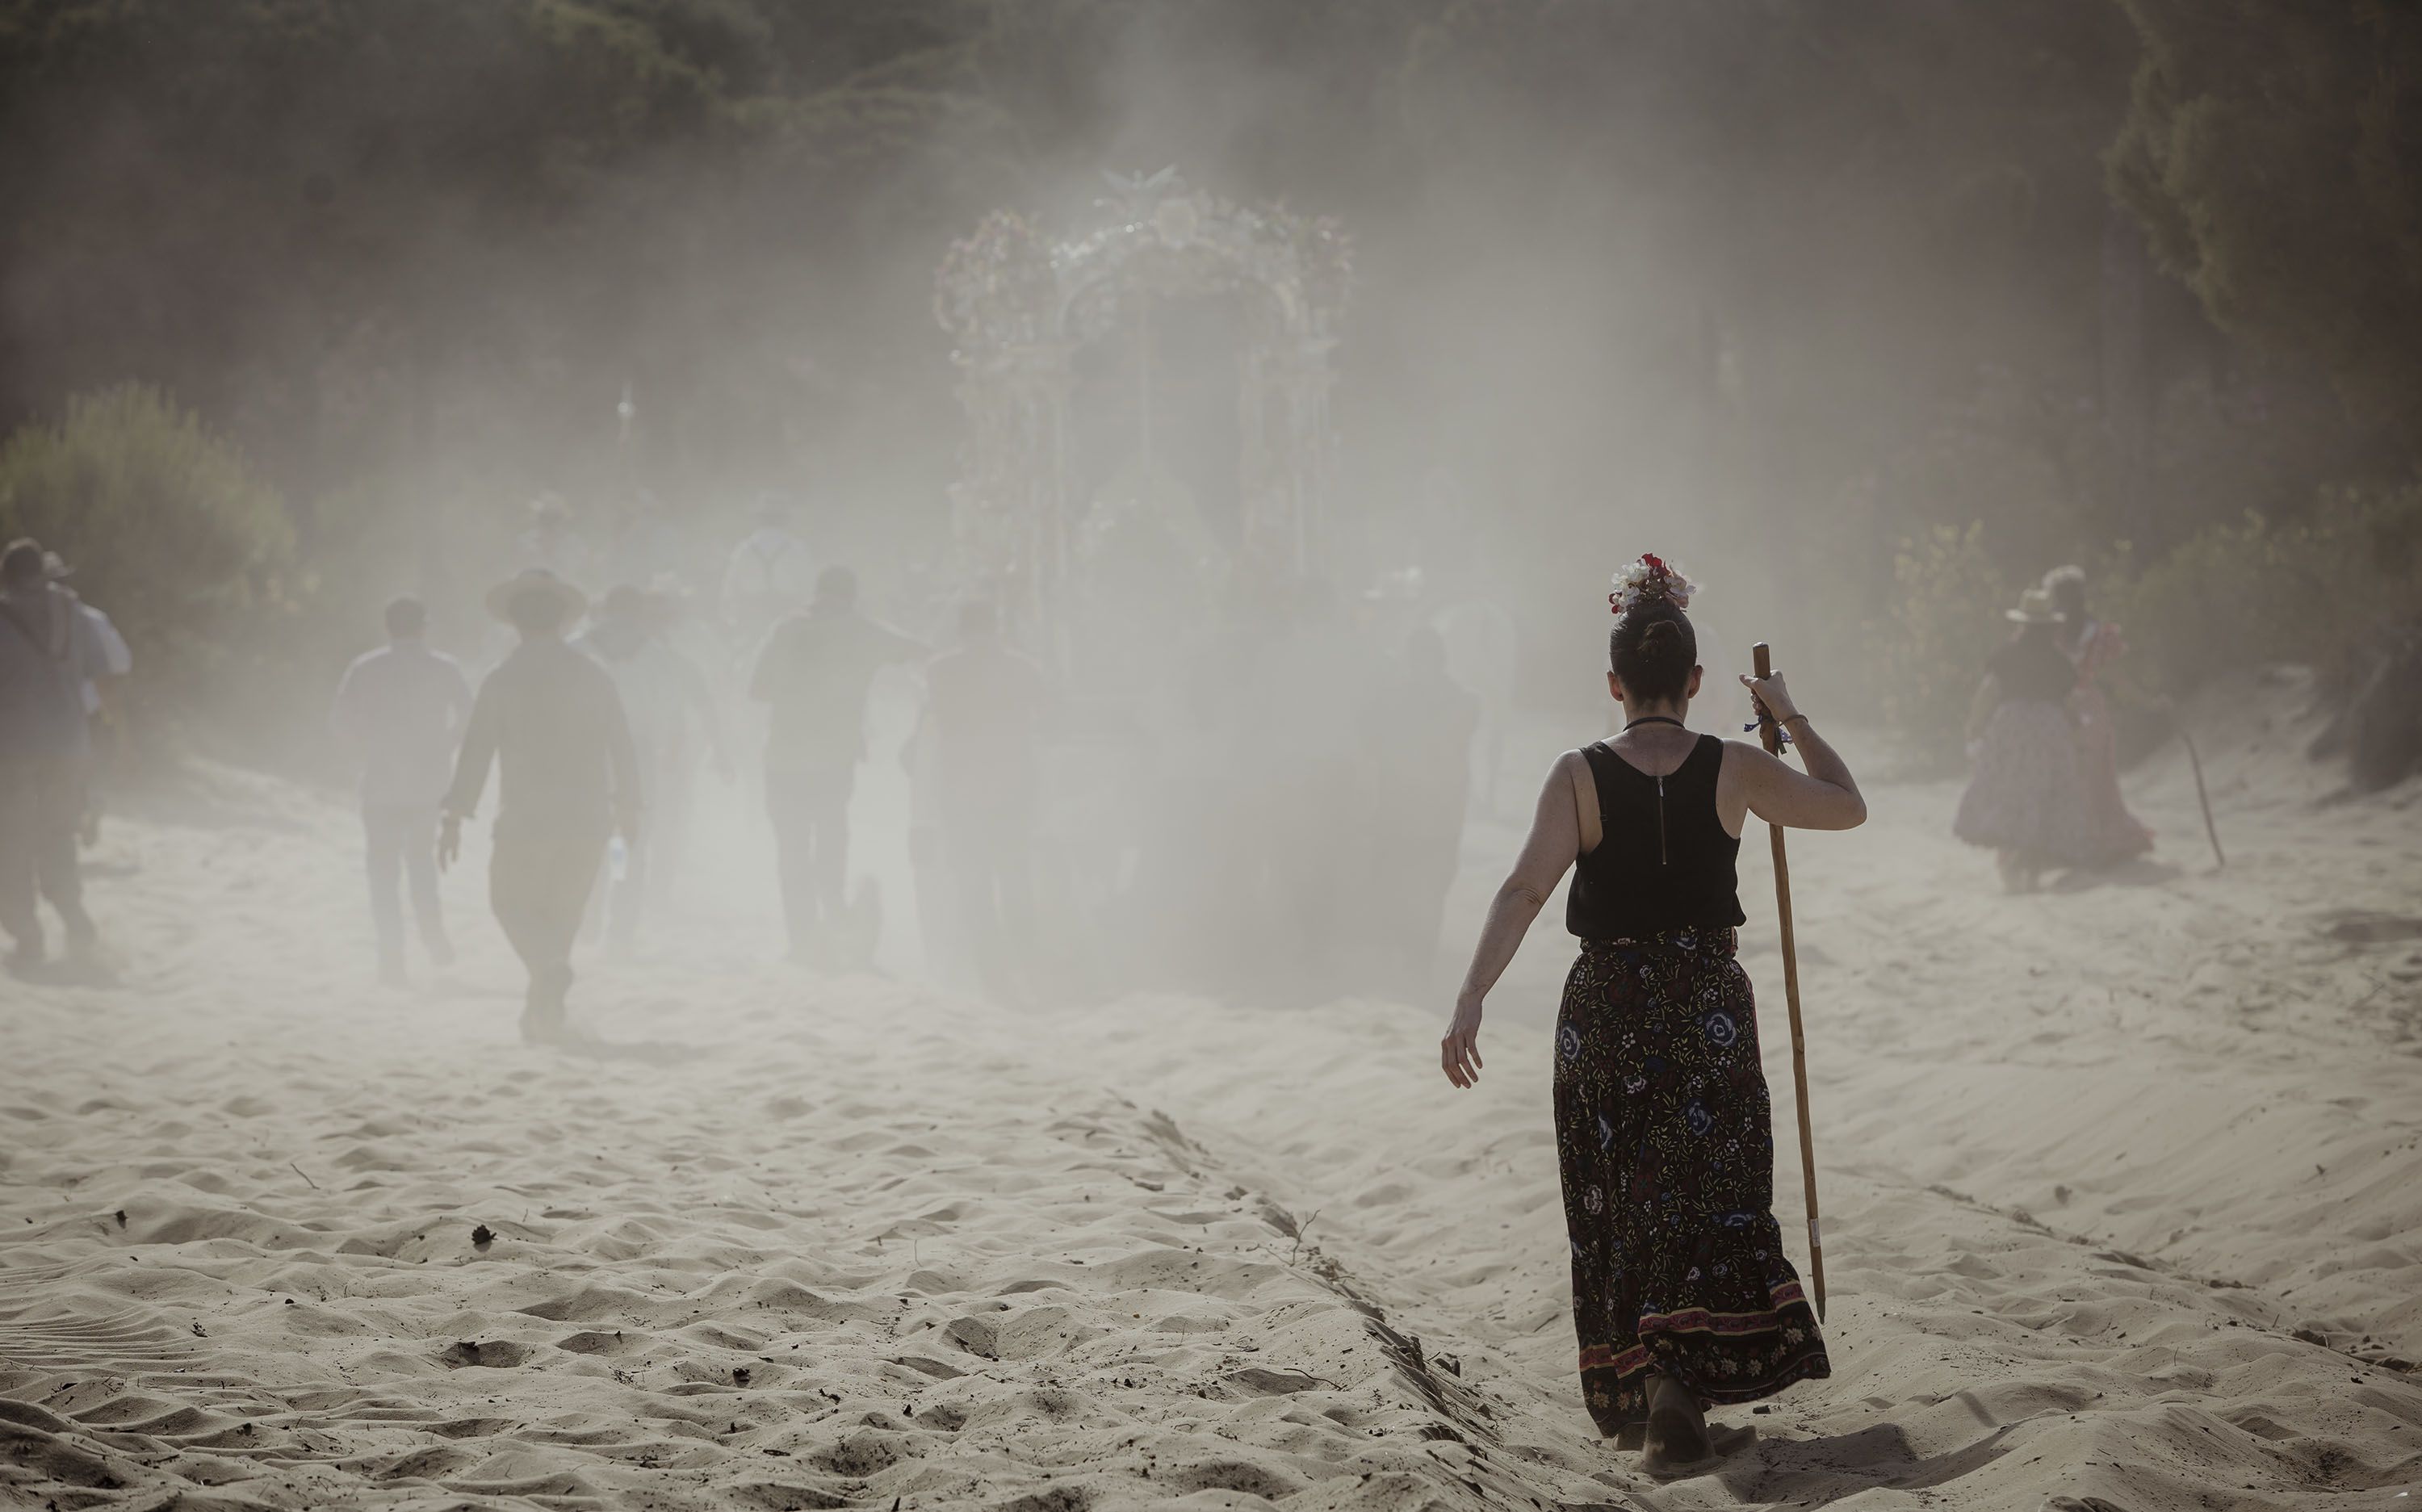 Una peregrina camina sola entre una nuebe de polvo tras la carreta de plata.